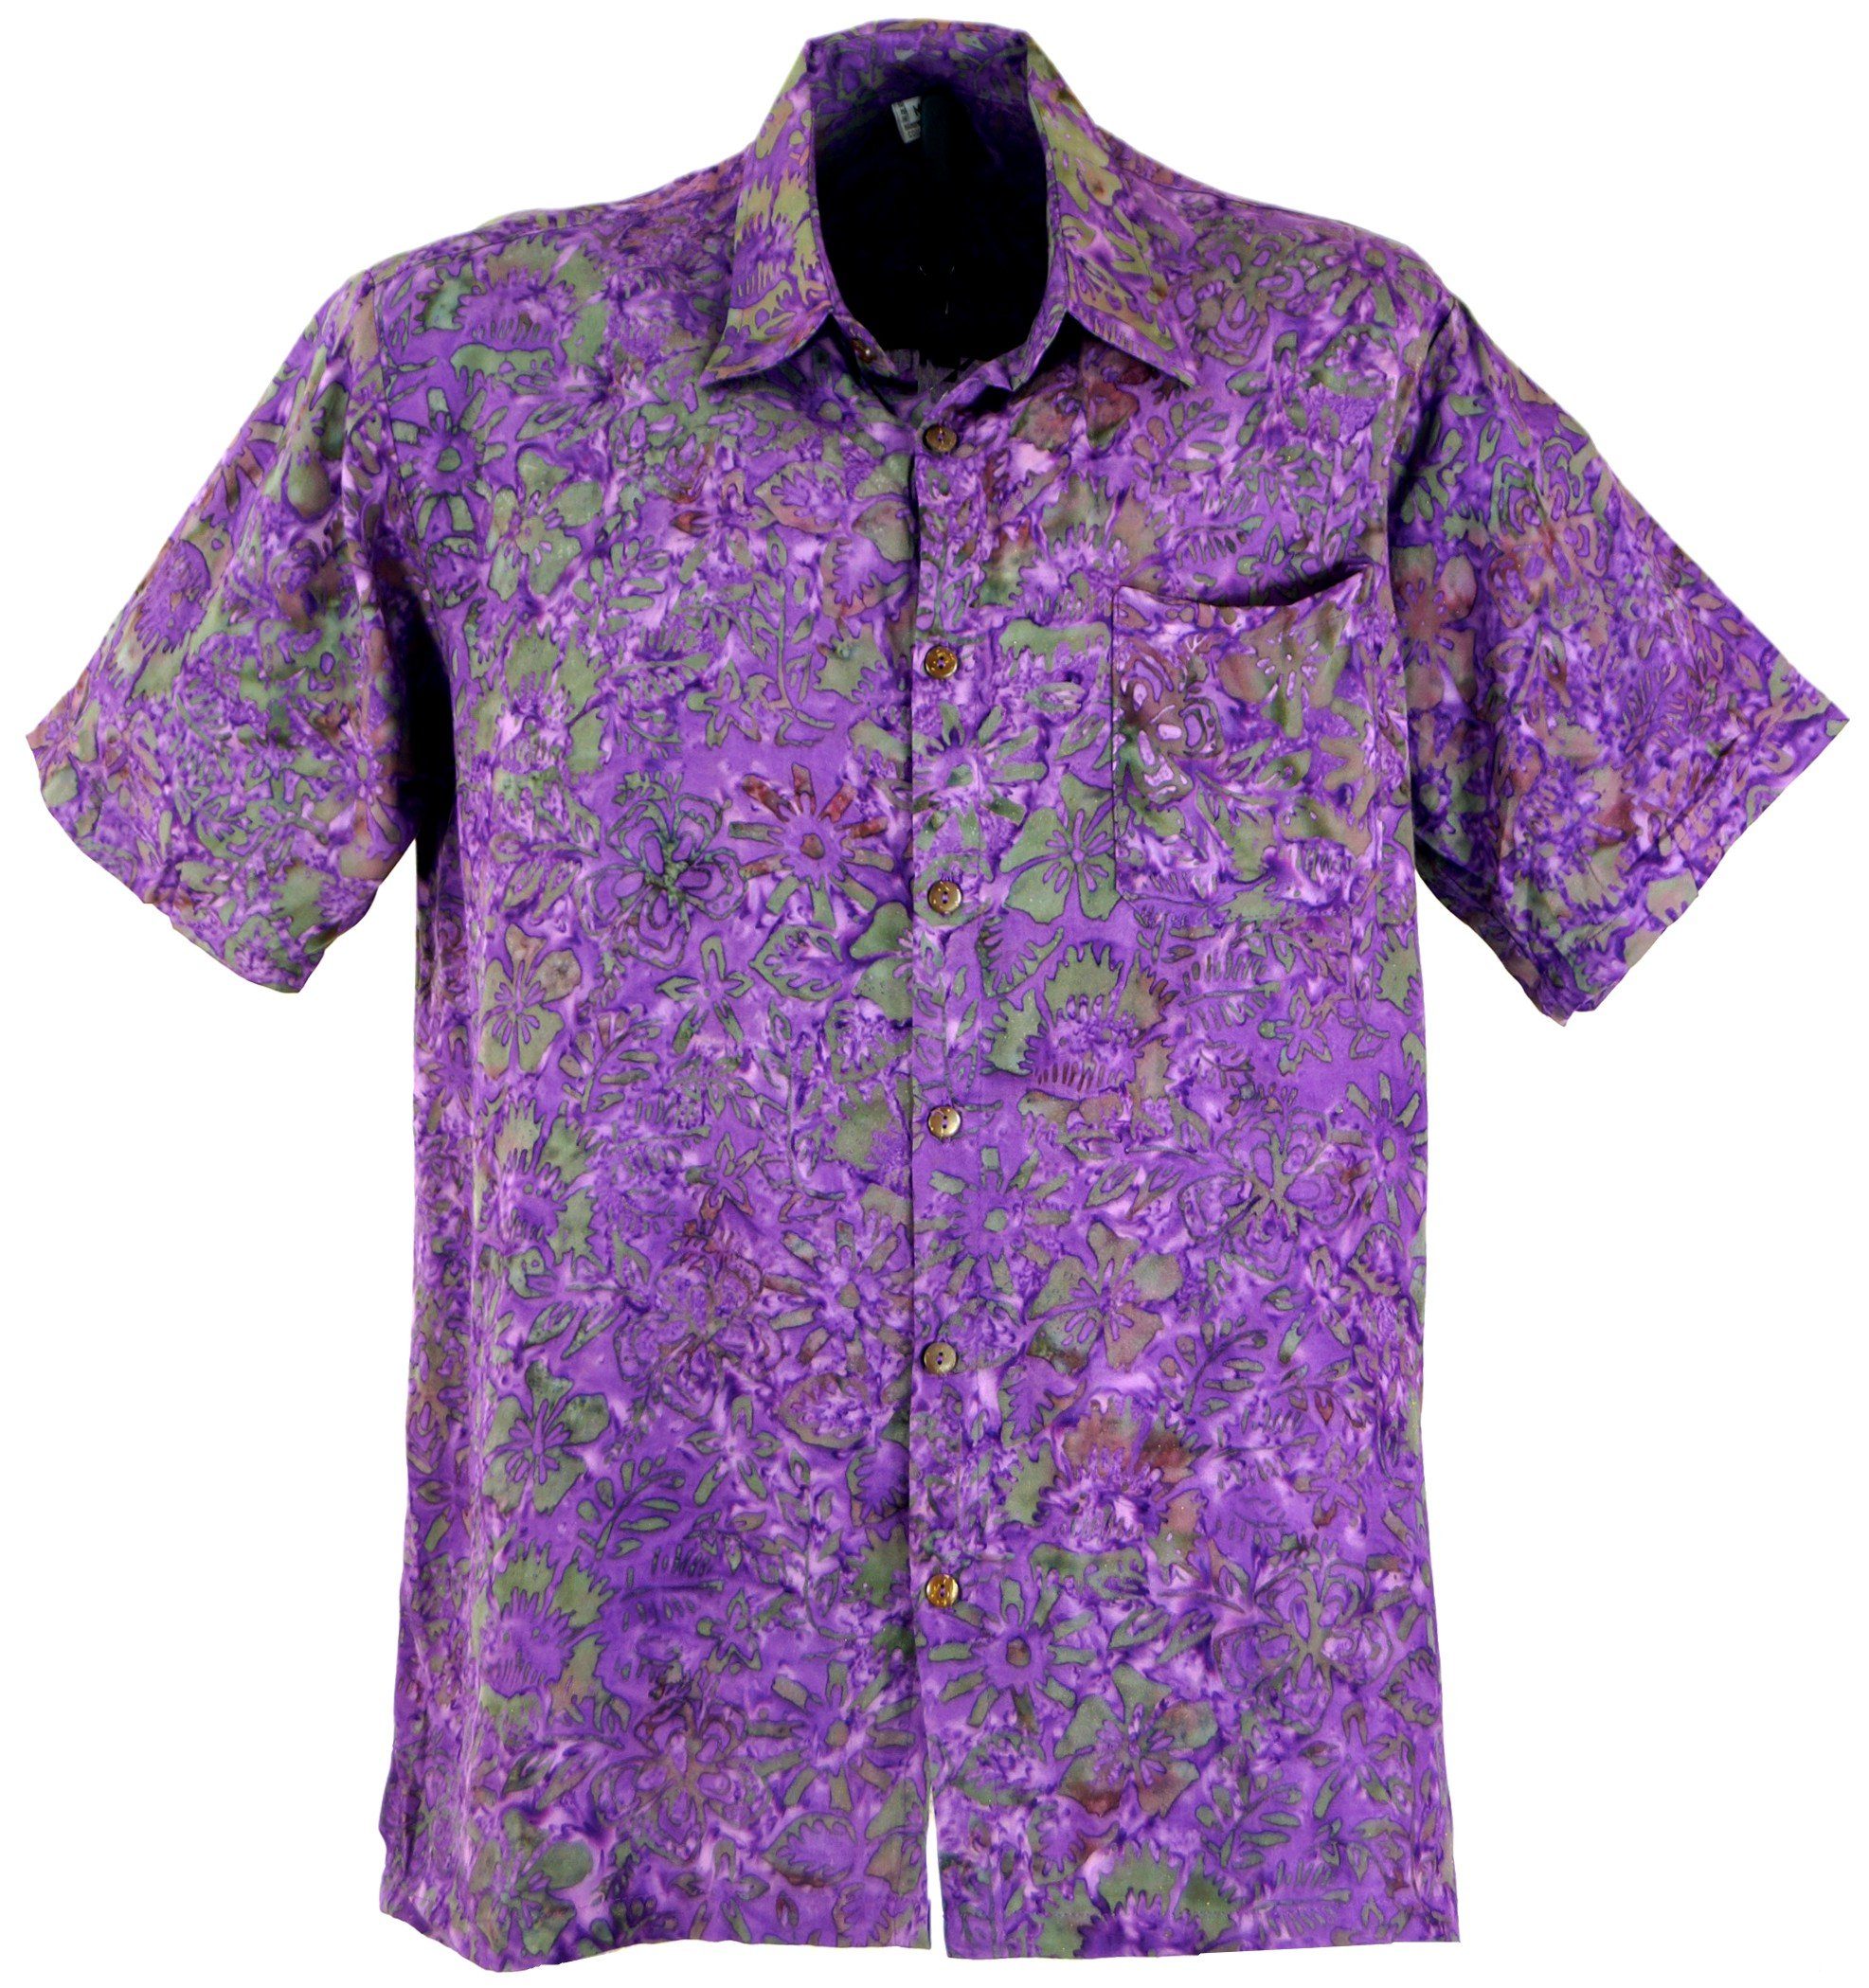 Guru-Shop Hemd & Shirt Hippiehemd, Hawaiihemd, Batik Hemd - flieder alternative Bekleidung, Hippie, Ethno Style